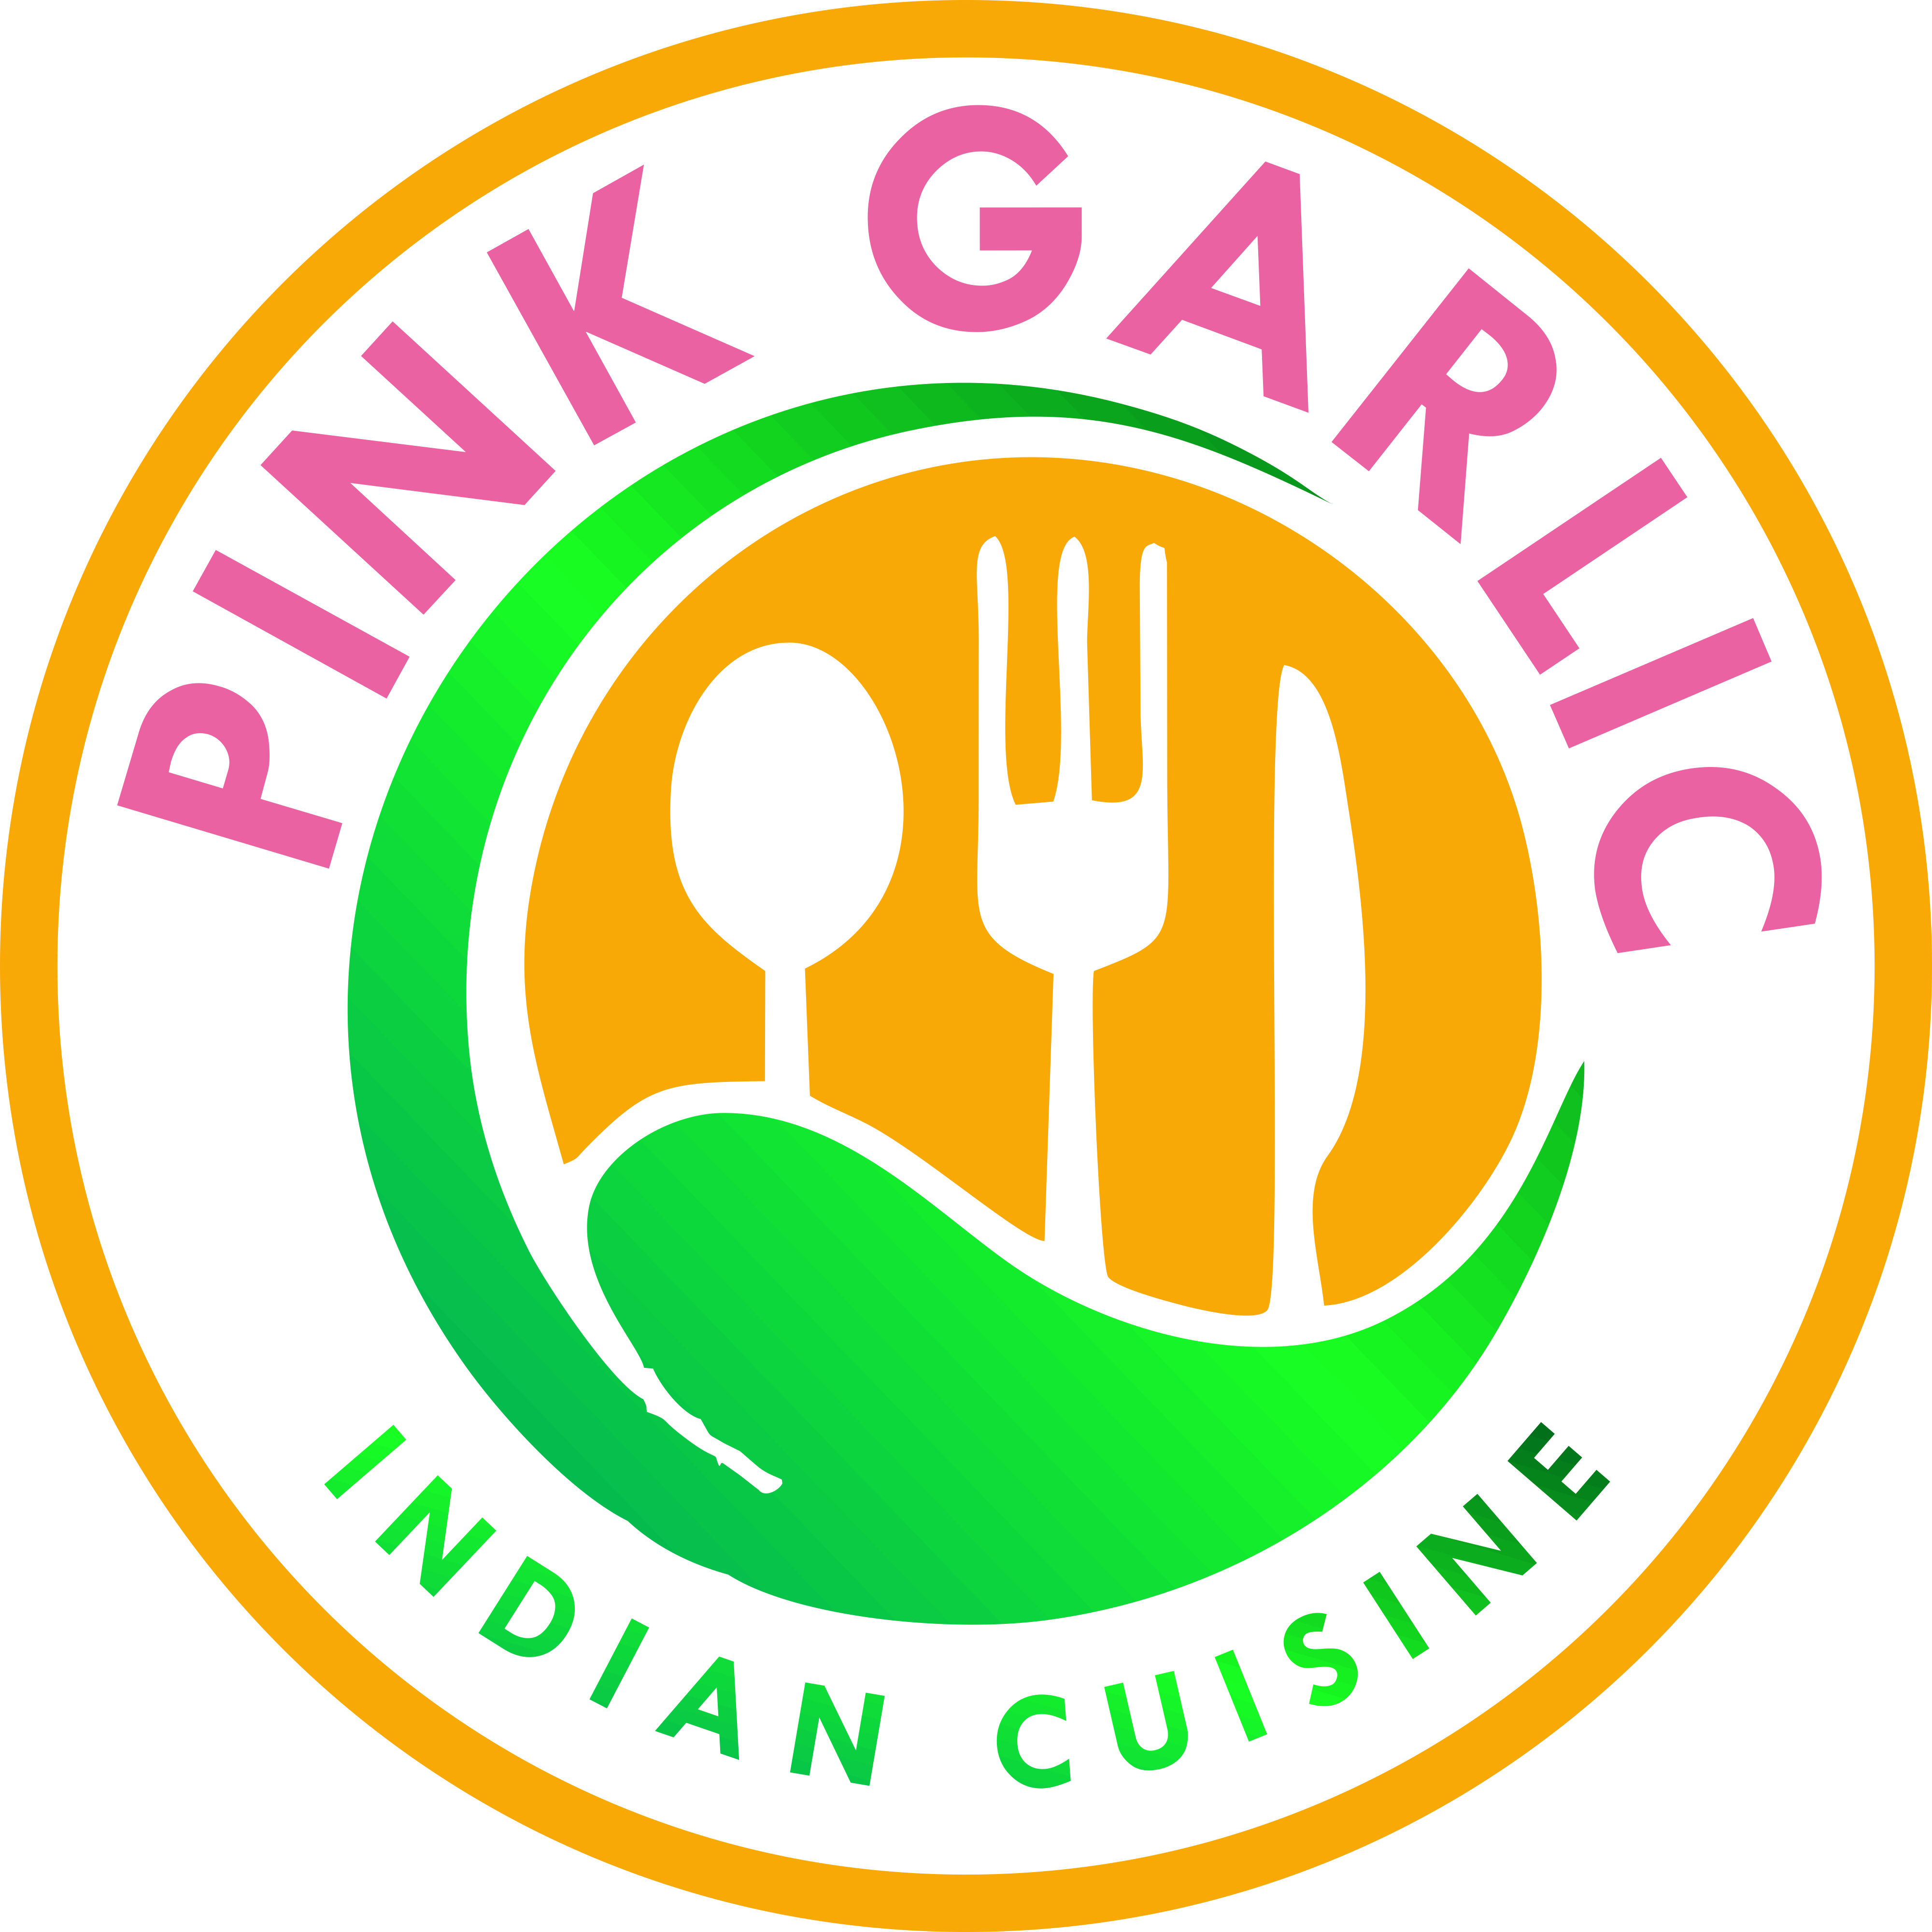 Pink Garlic